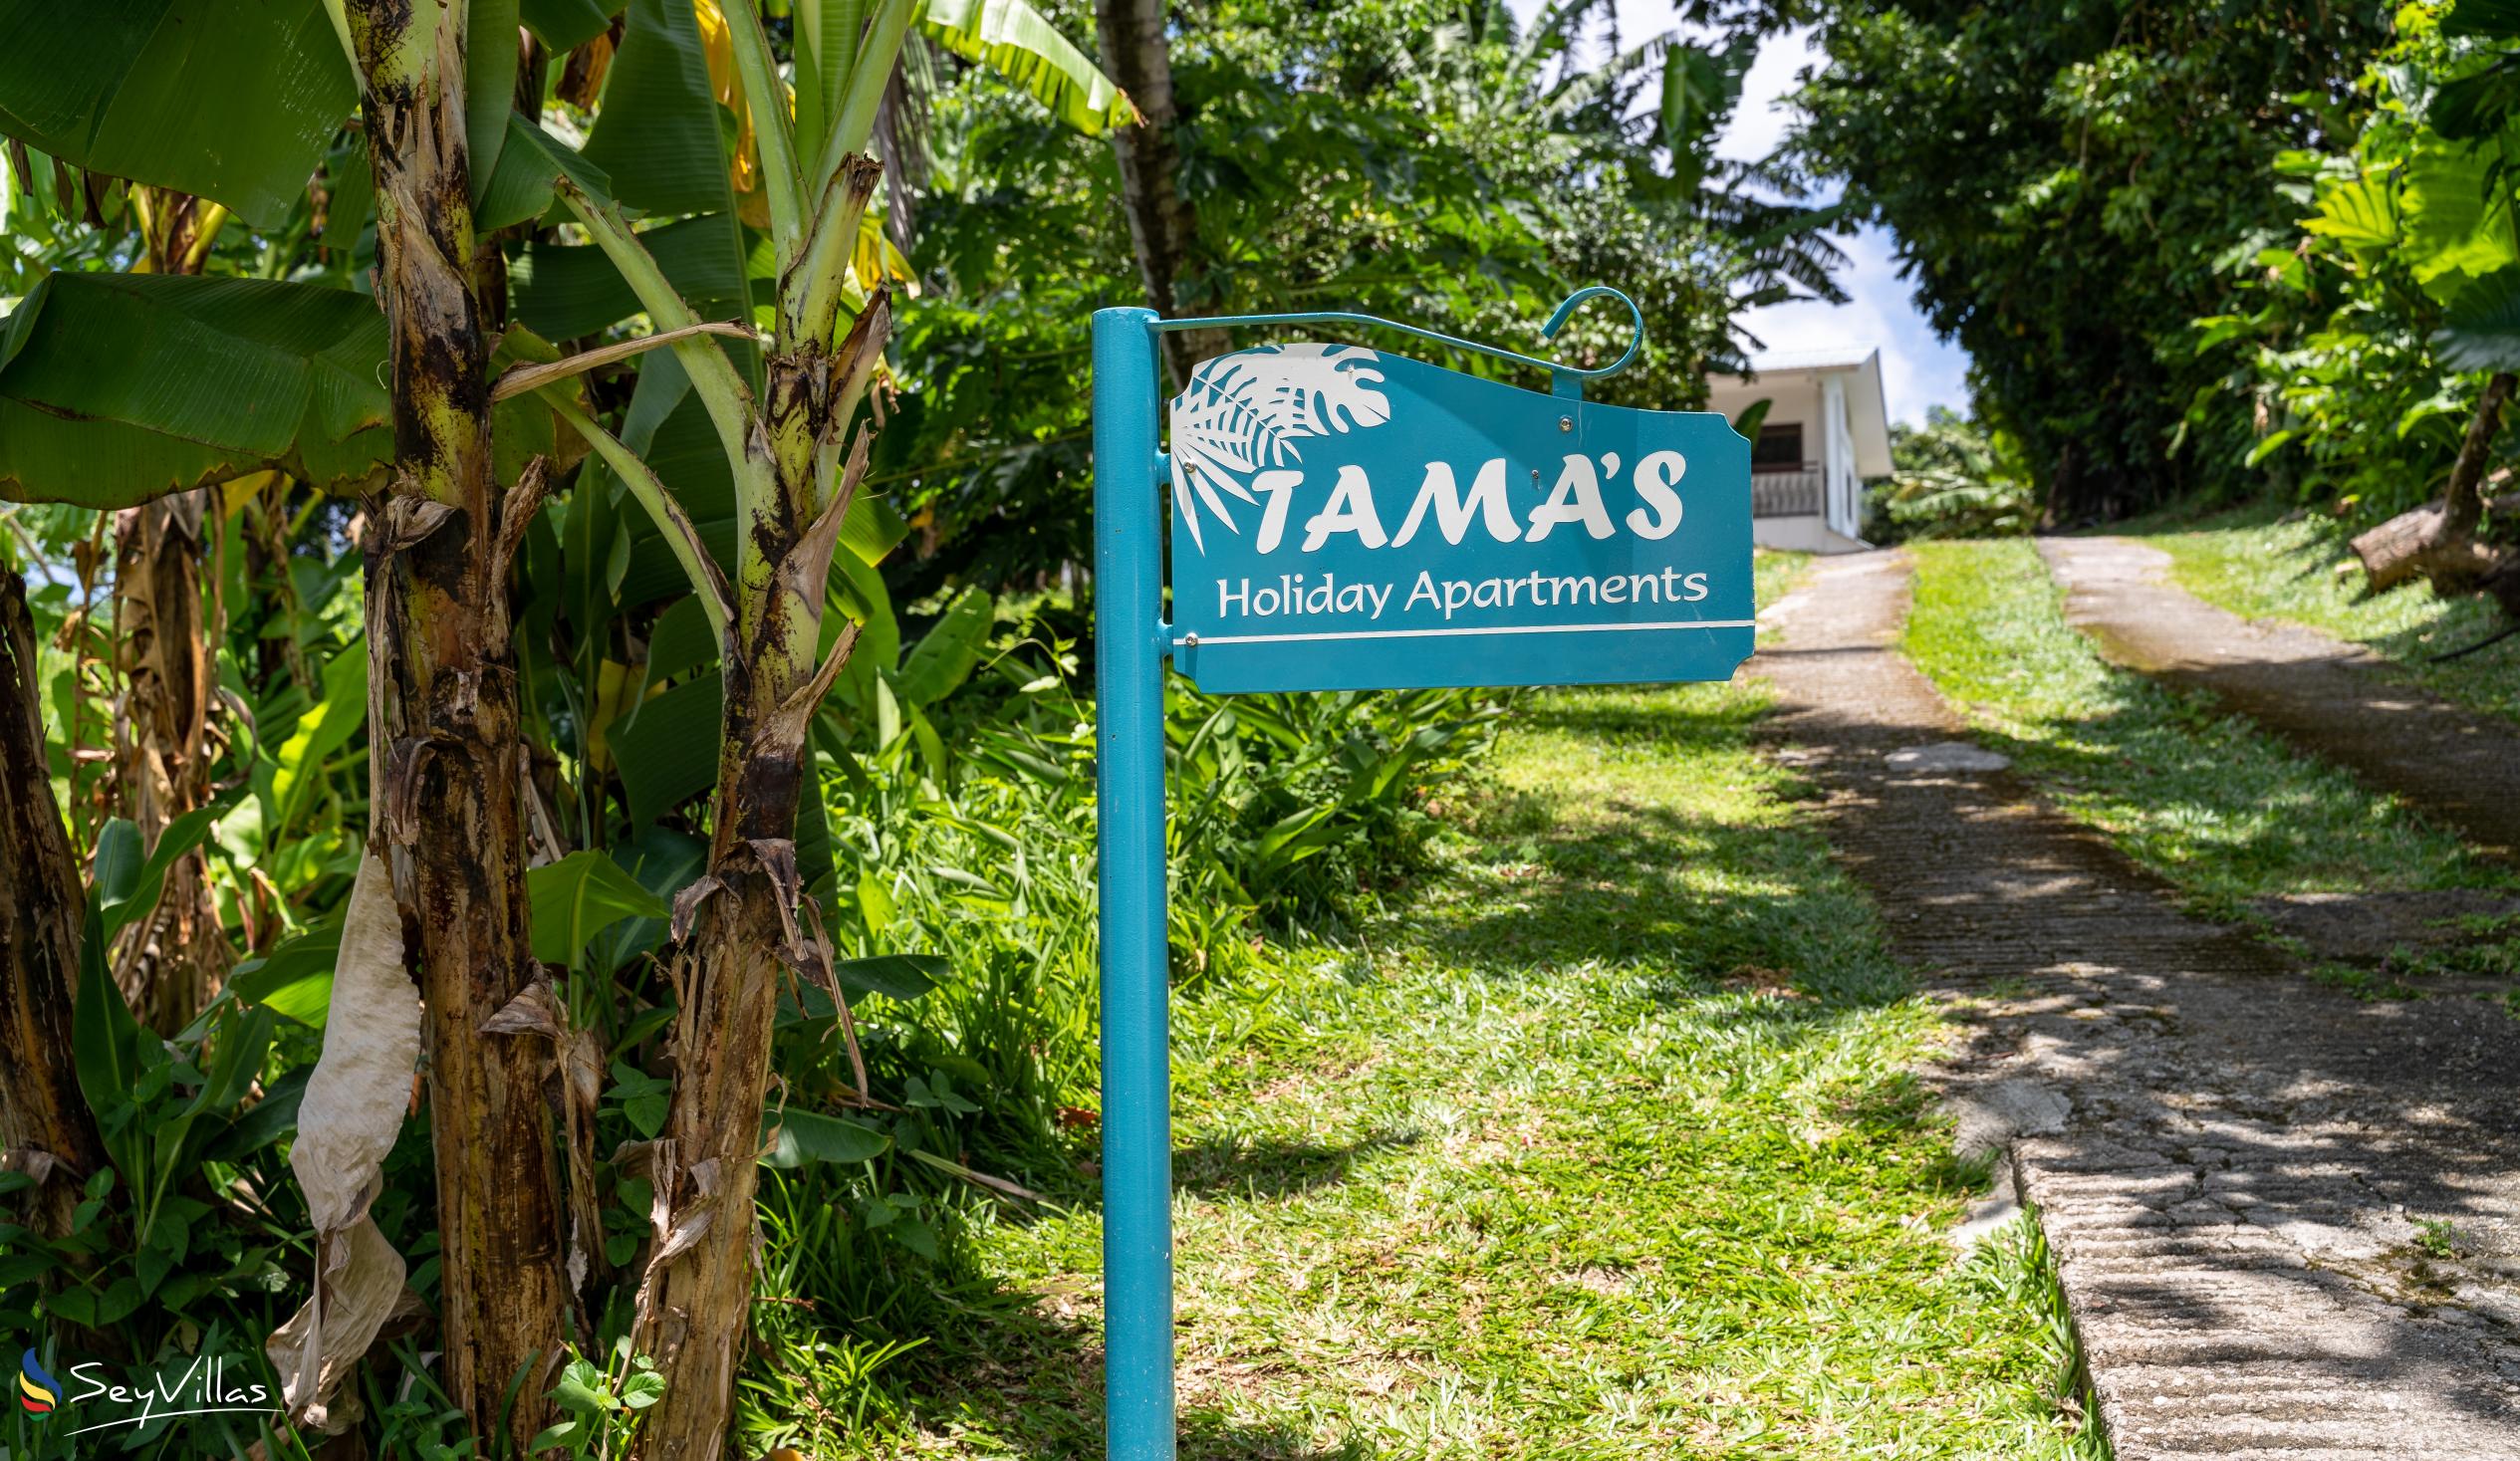 Photo 22: Tama's Holiday Apartments - Location - Mahé (Seychelles)